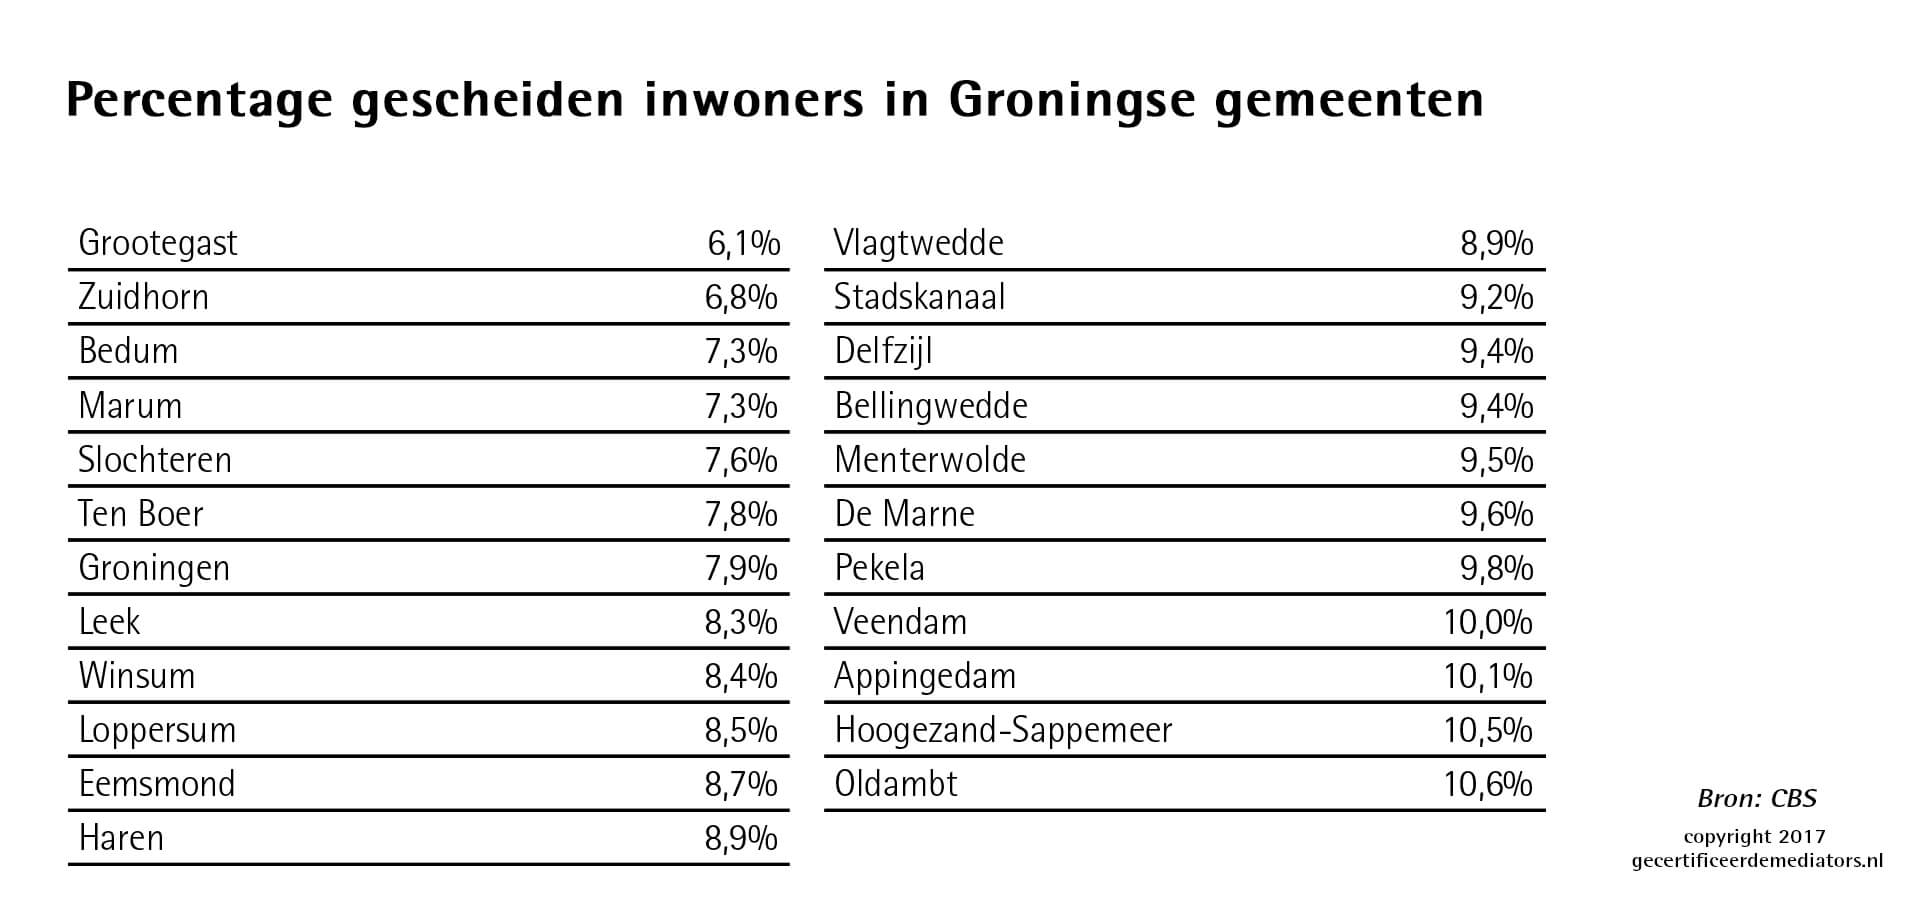 Percentage gescheiden inwoners in Groningse gemeenten